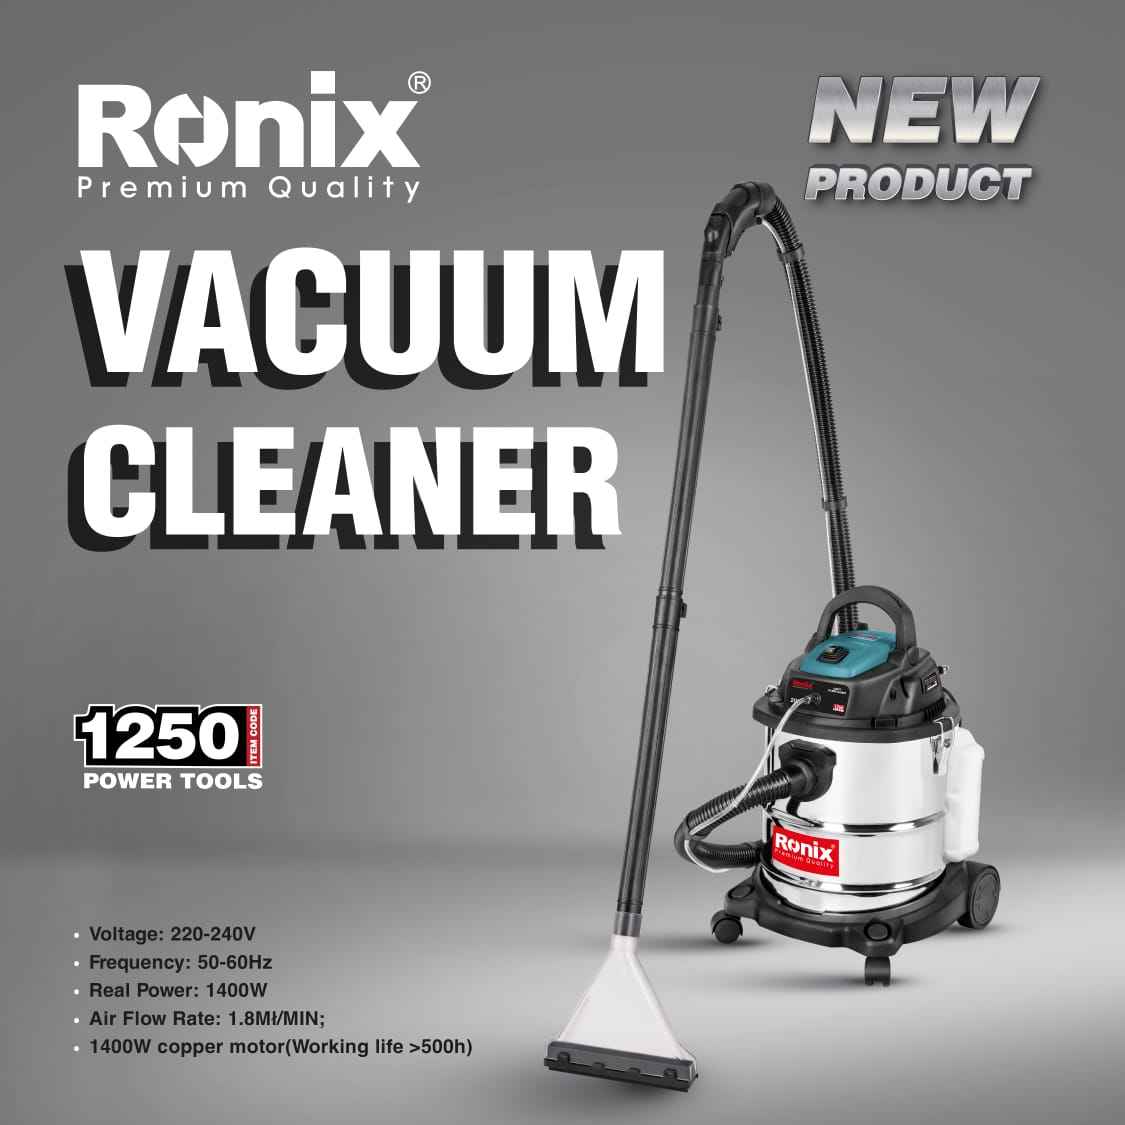 Ronix Carpet Cleaner 1250 Floor brush carpet cleaner Clean sofa classic dry vacuum cleaner